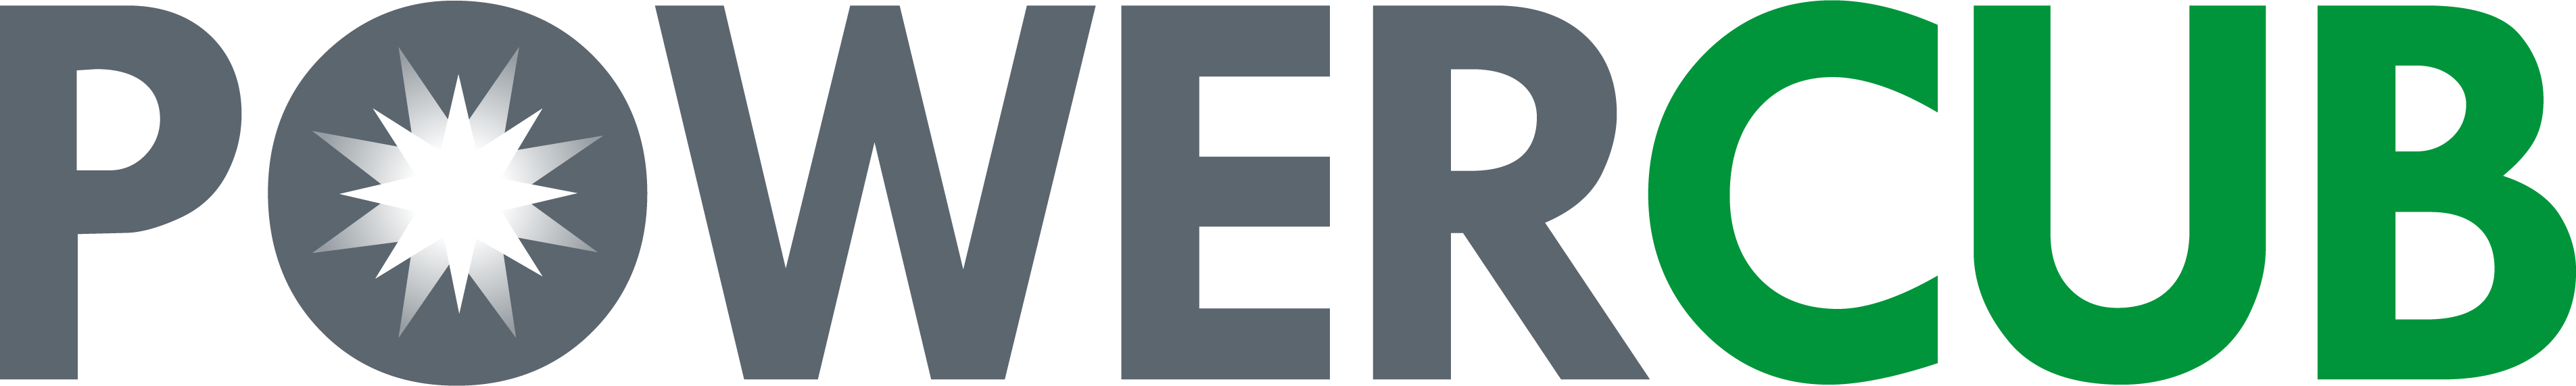 POWERCUB Logo